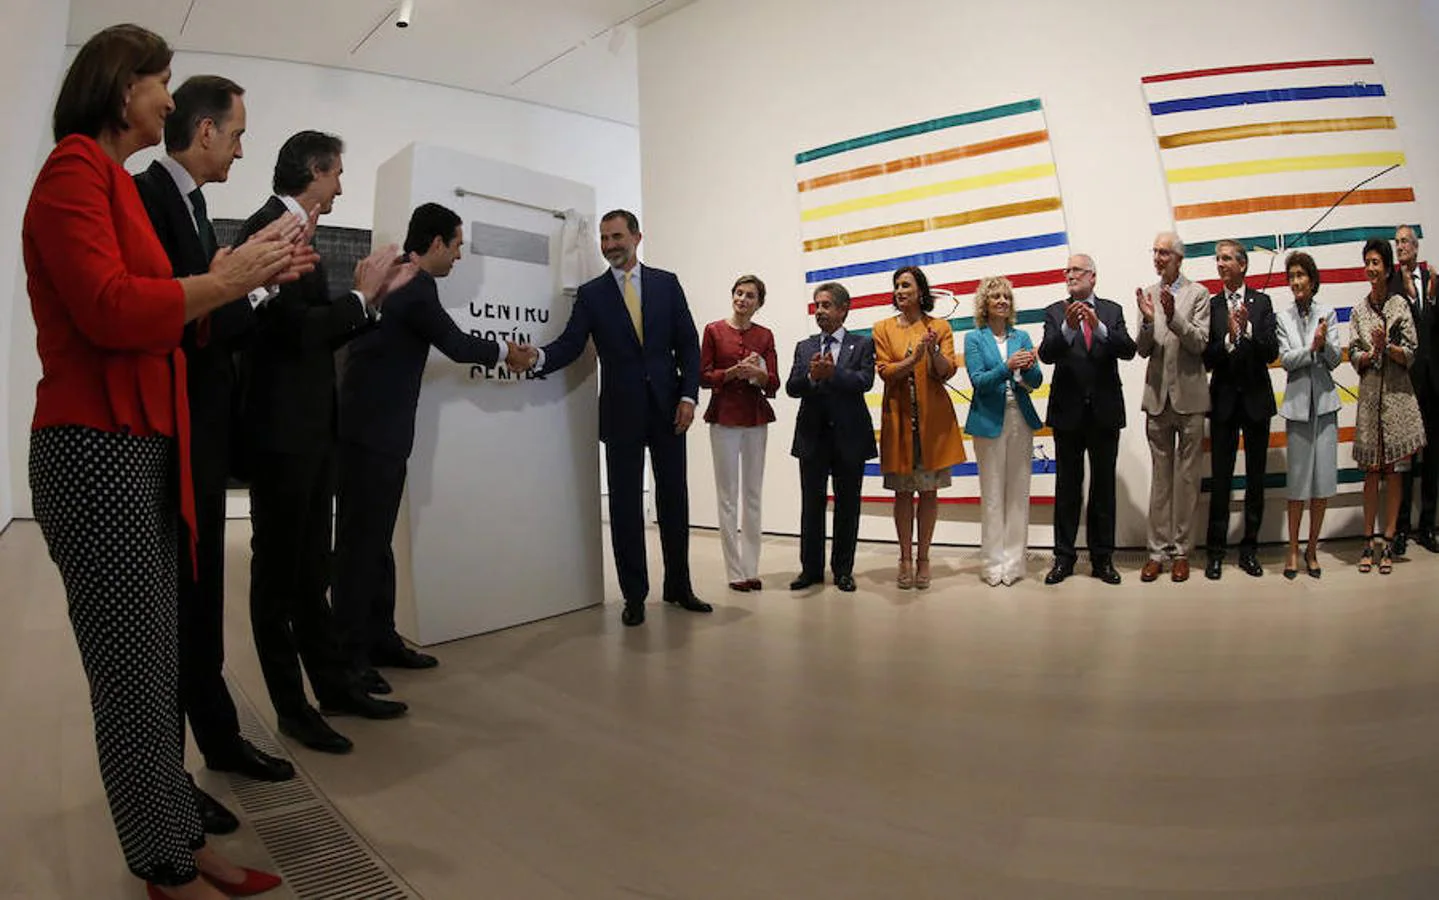 Los Reyes Felipe y Letizia descubren la placa conmemorativa durante la inauguración del Centro Botín, el nuevo centro de arte que pone en marcha la Fundación Botín bajo un diseño de Renzo Piano y sobre la bahía de Santander.. Efe